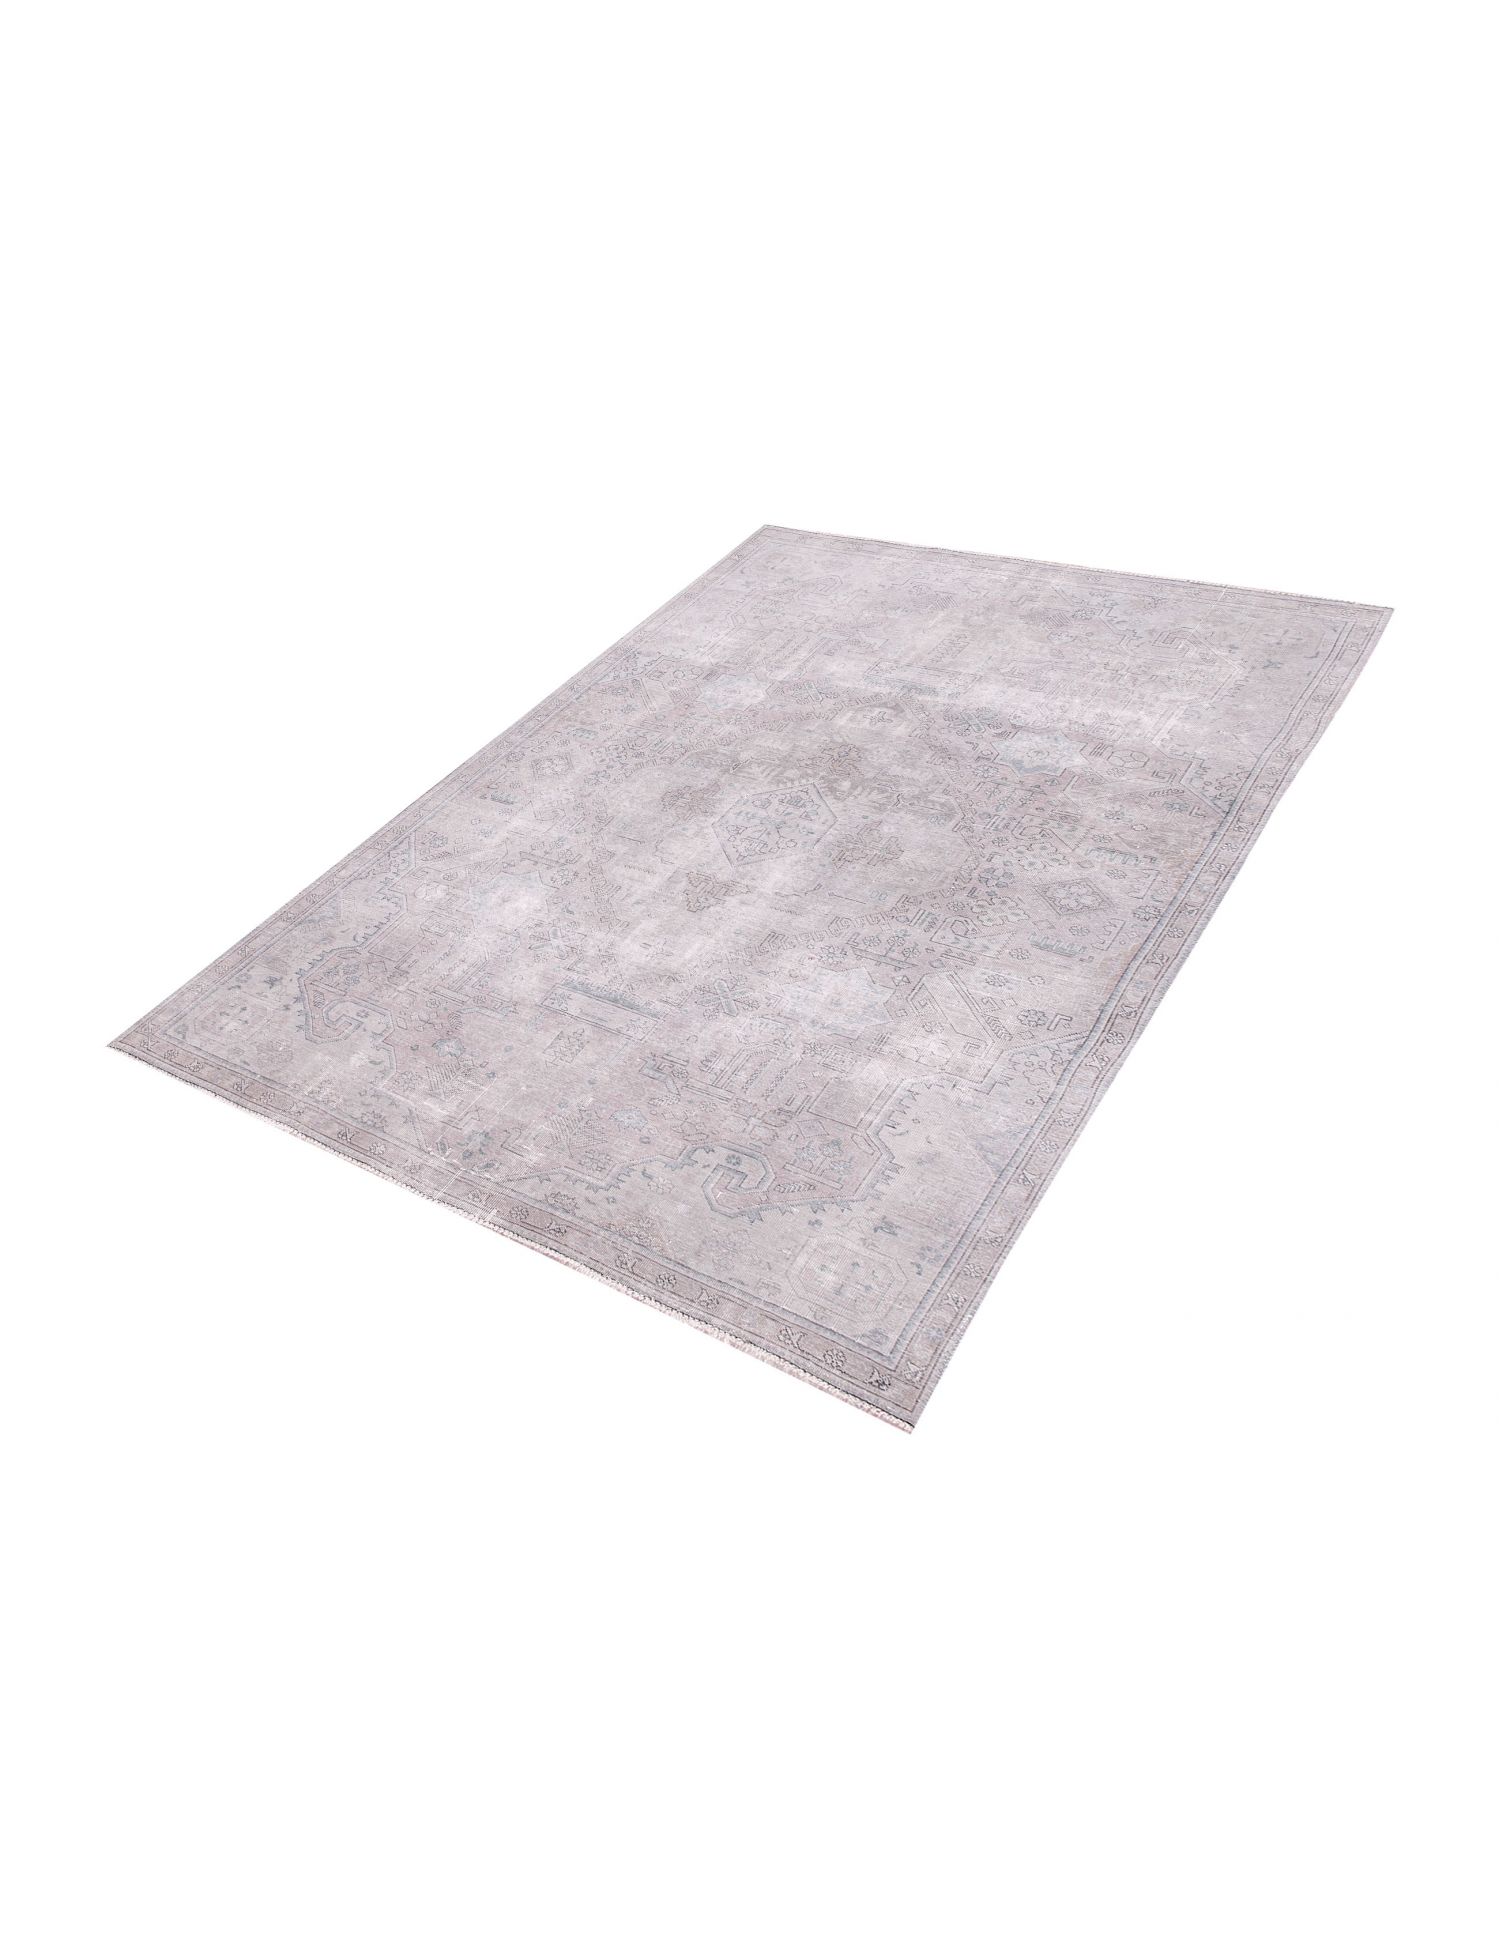 Persischer vintage teppich  grau <br/>290 x 202 cm